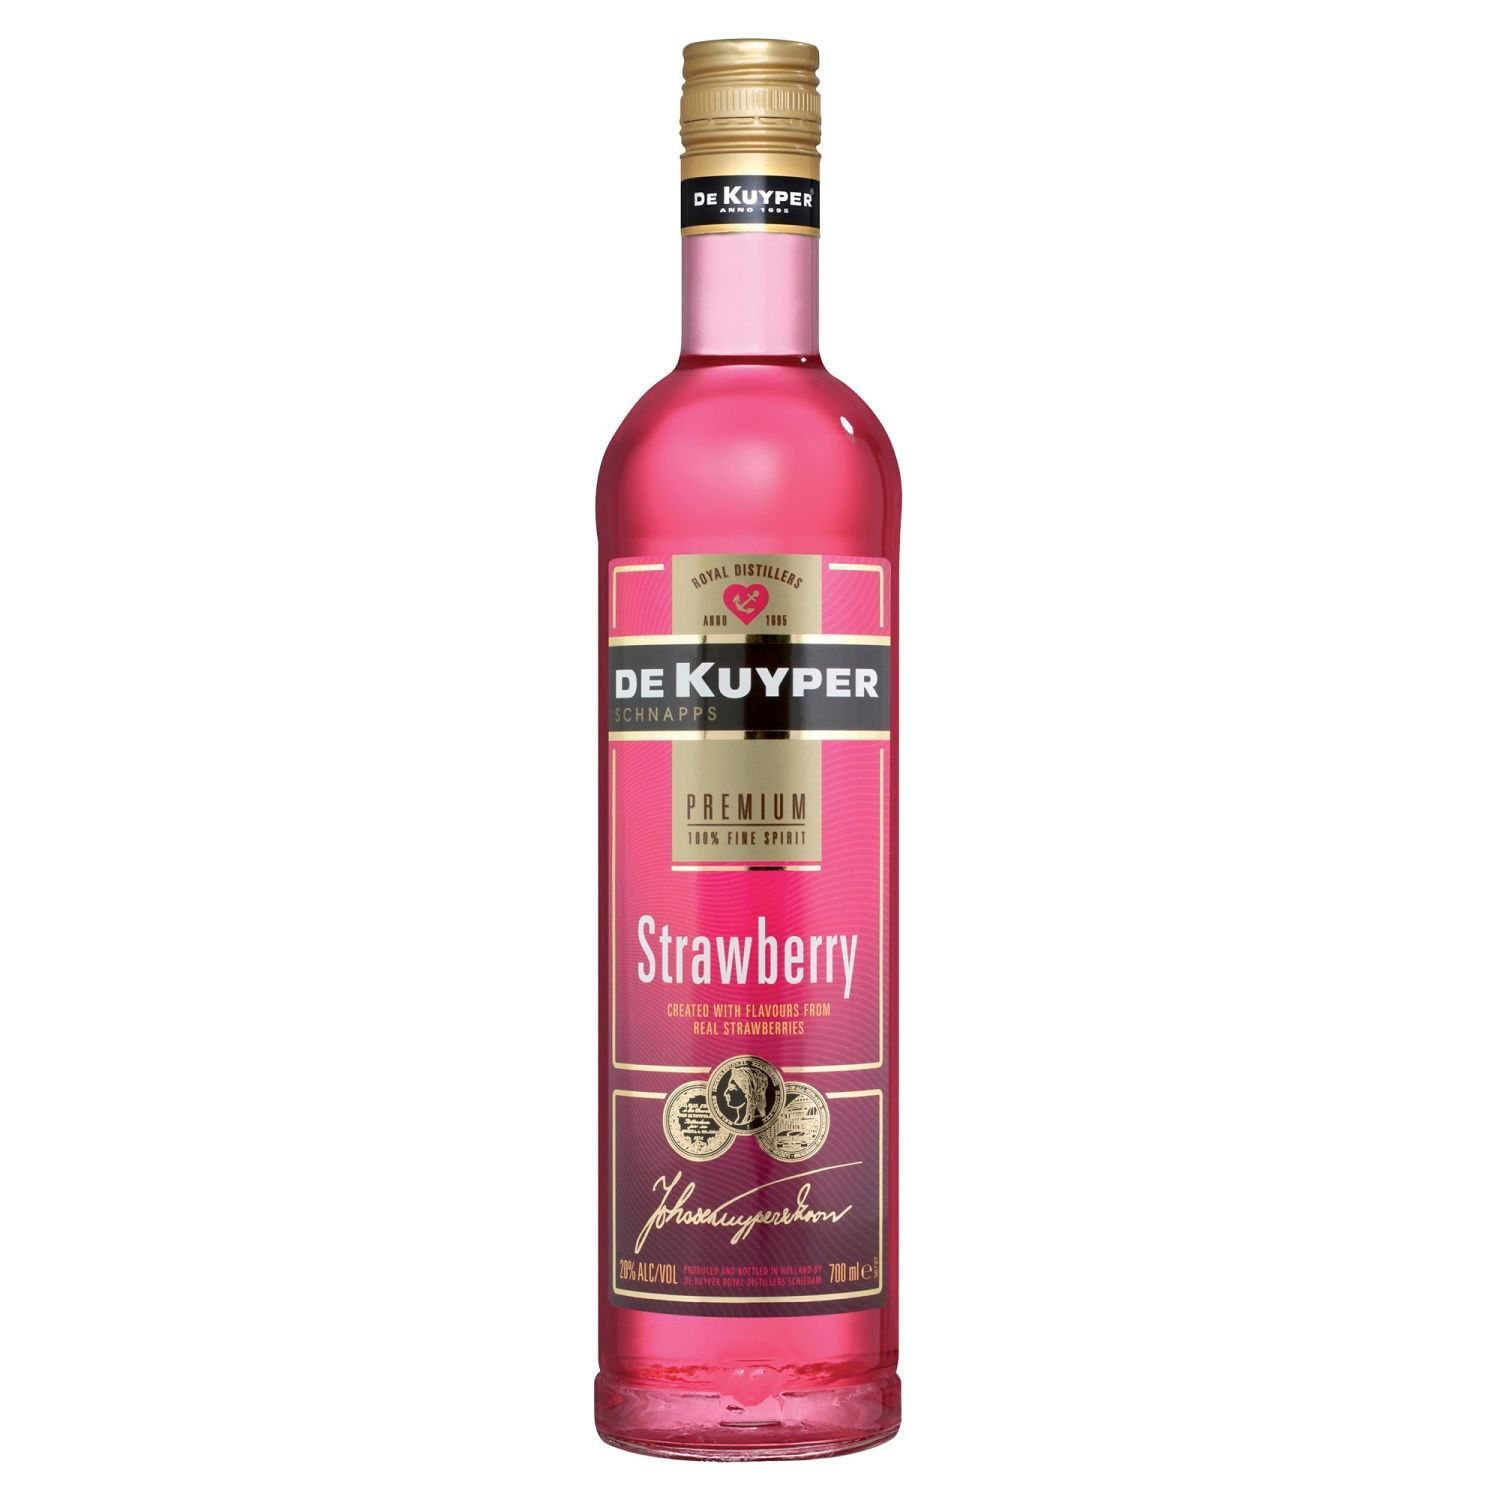 De Kuyper Strawberry Schnapps 700mL Bottle